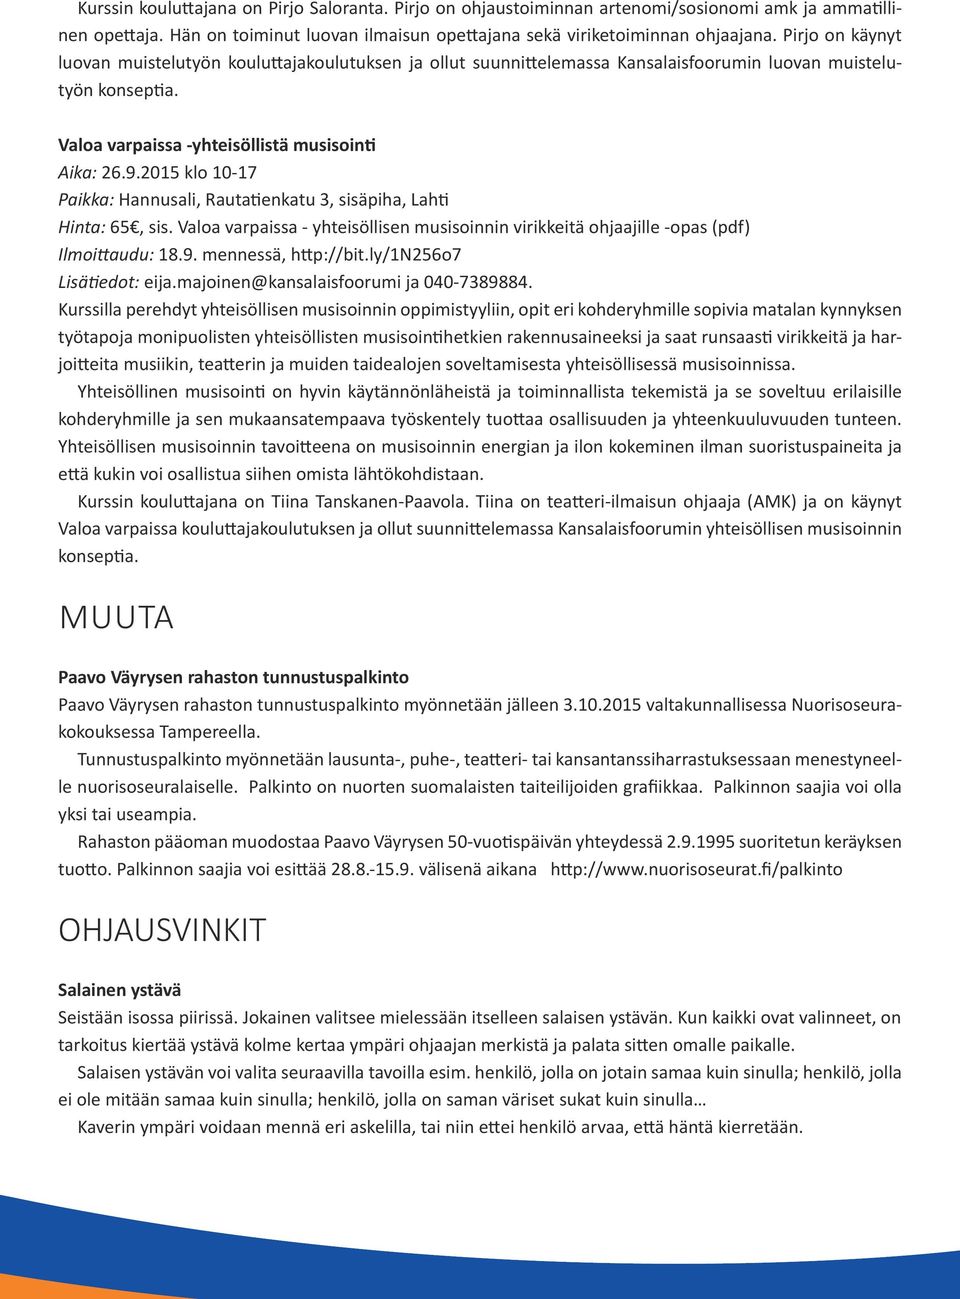 2015 klo 10-17 Paikka: Hannusali, Rautatienkatu 3, sisäpiha, Lahti Hinta: 65, sis. Valoa varpaissa - yhteisöllisen musisoinnin virikkeitä ohjaajille -opas (pdf) Ilmoittaudu: 18.9.